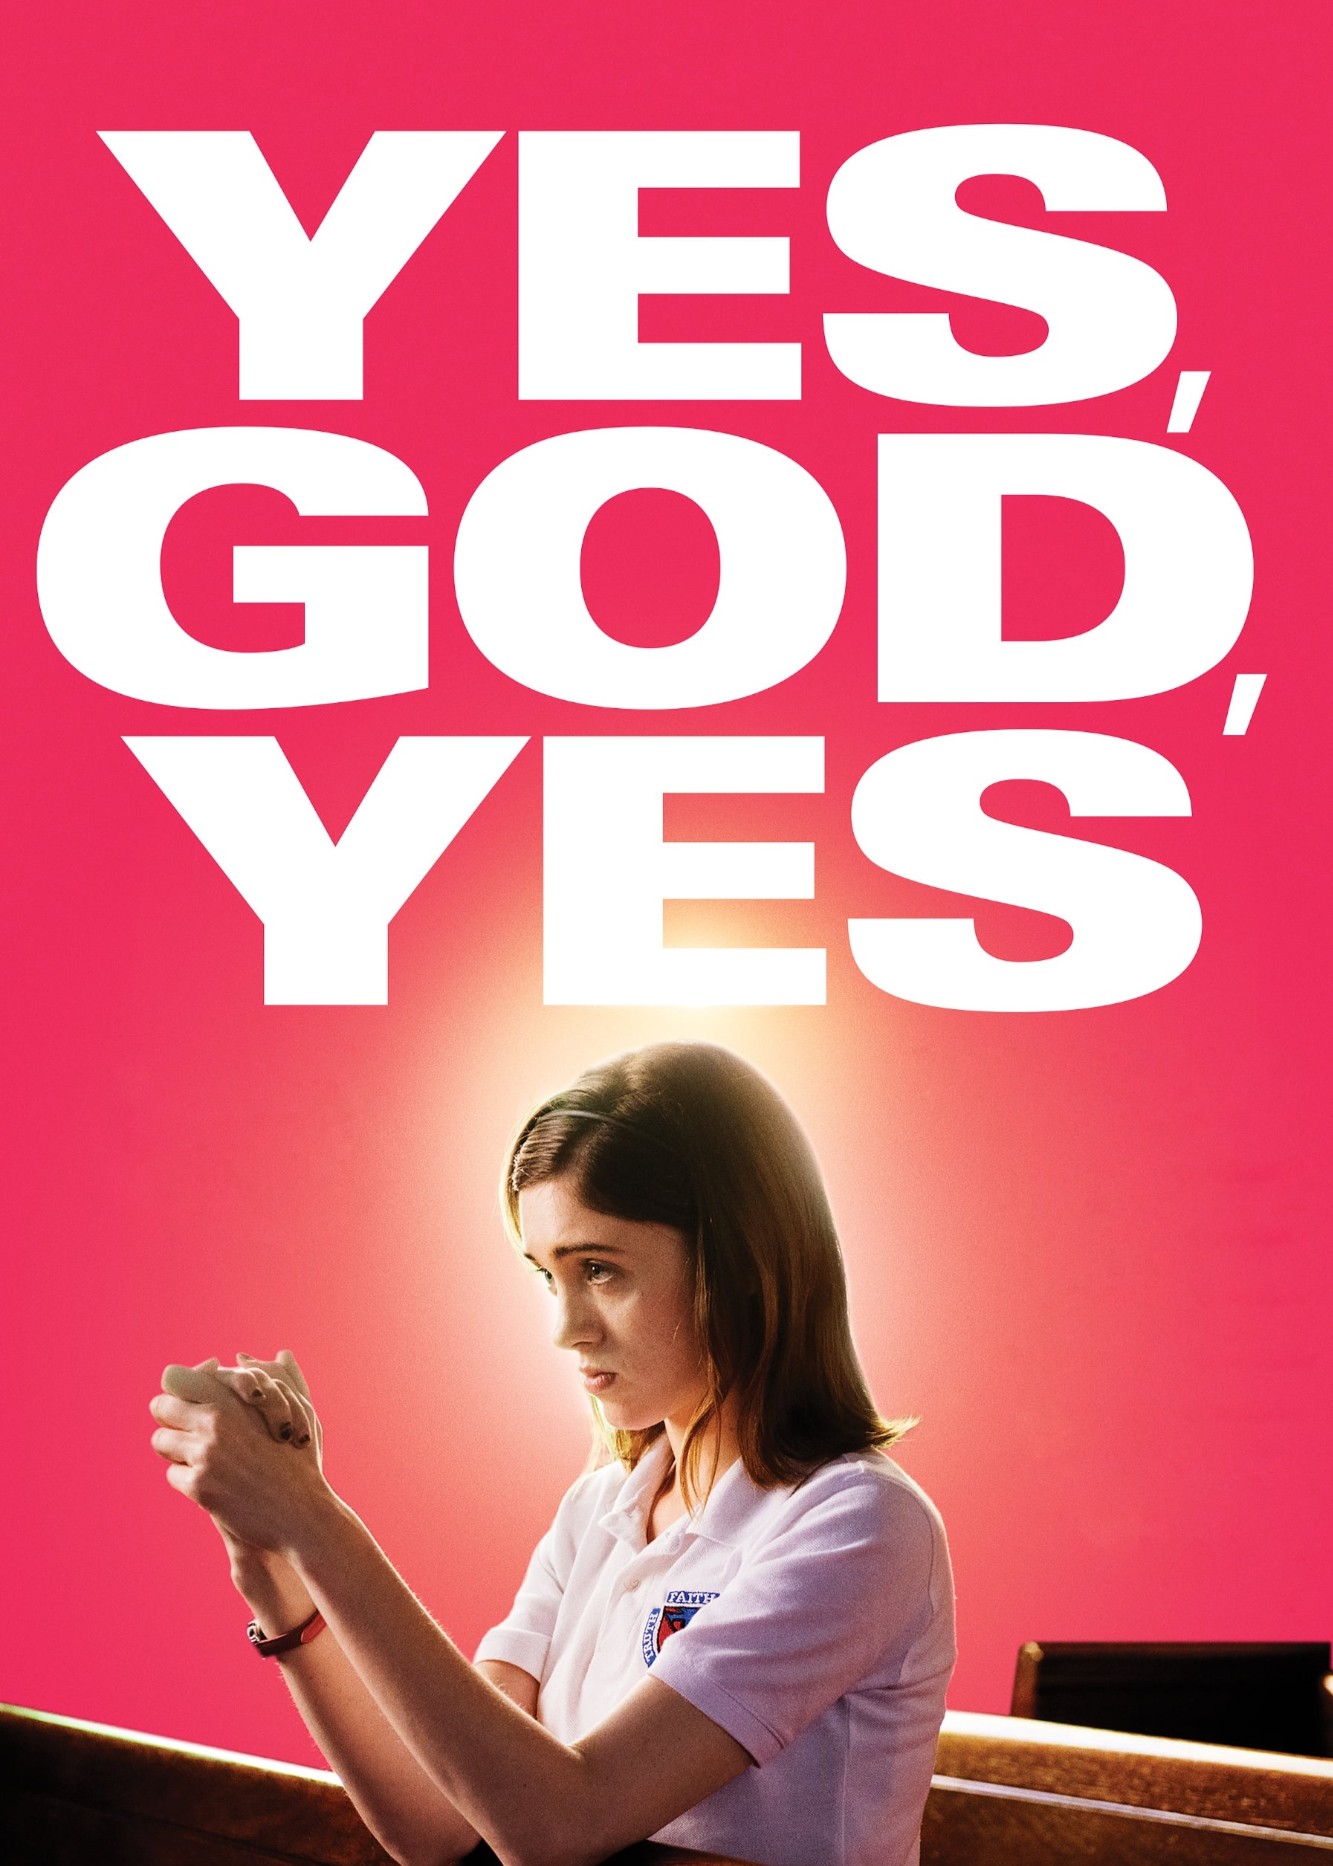 Yes, God, Yes - Yes, God, Yes (2019)